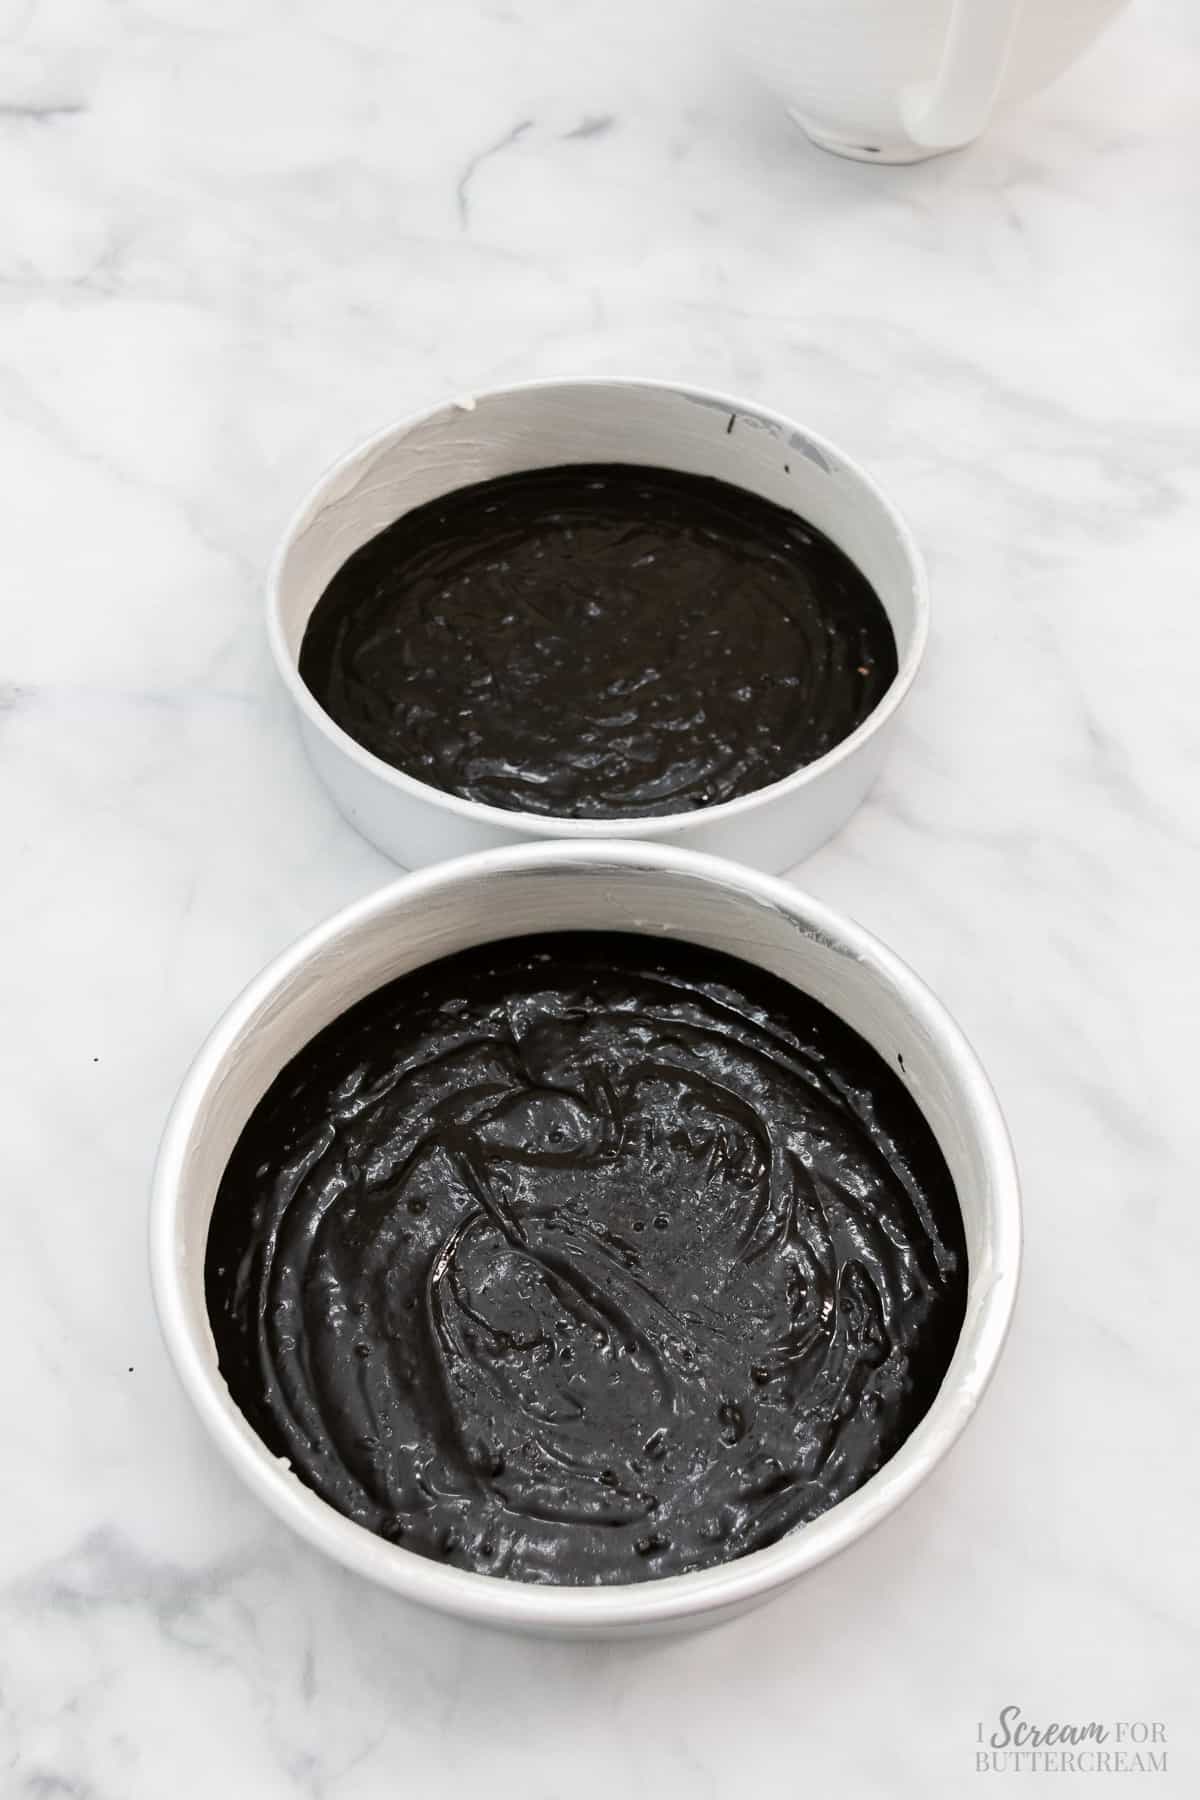 Black velvet cake batter poured into two pans.